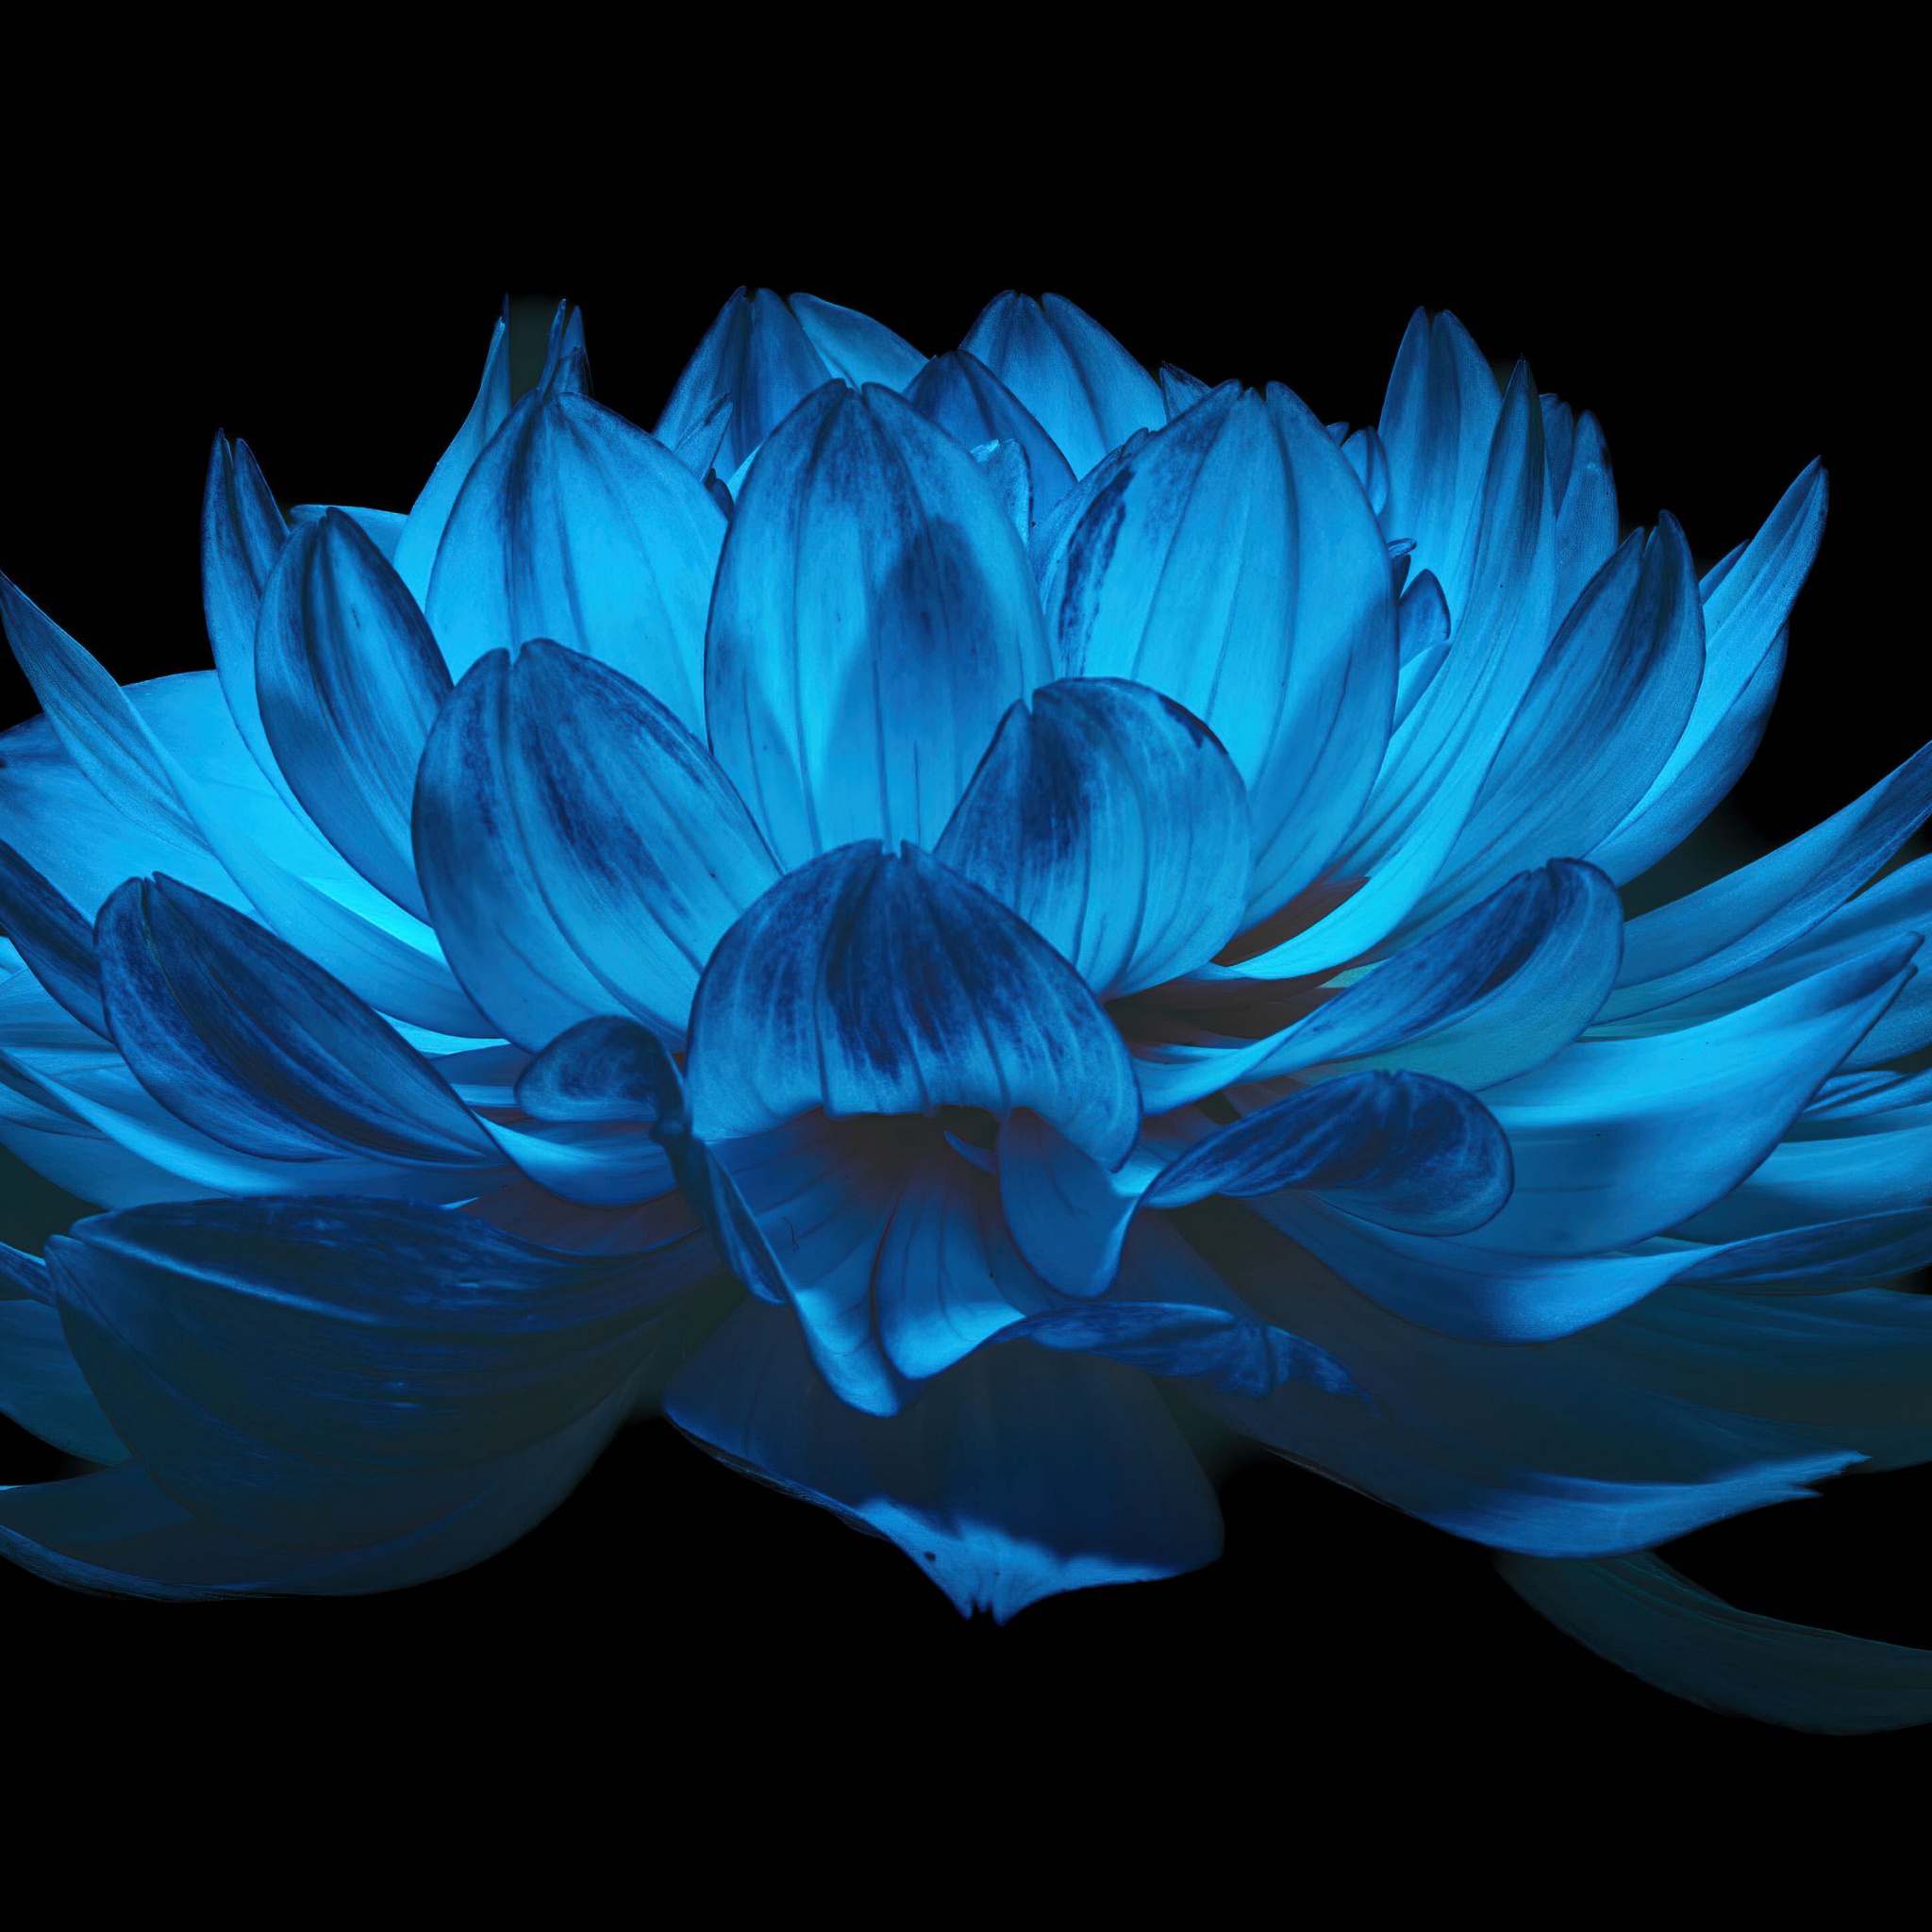 Dahlia flower Wallpaper 4K, AMOLED, Blue flower